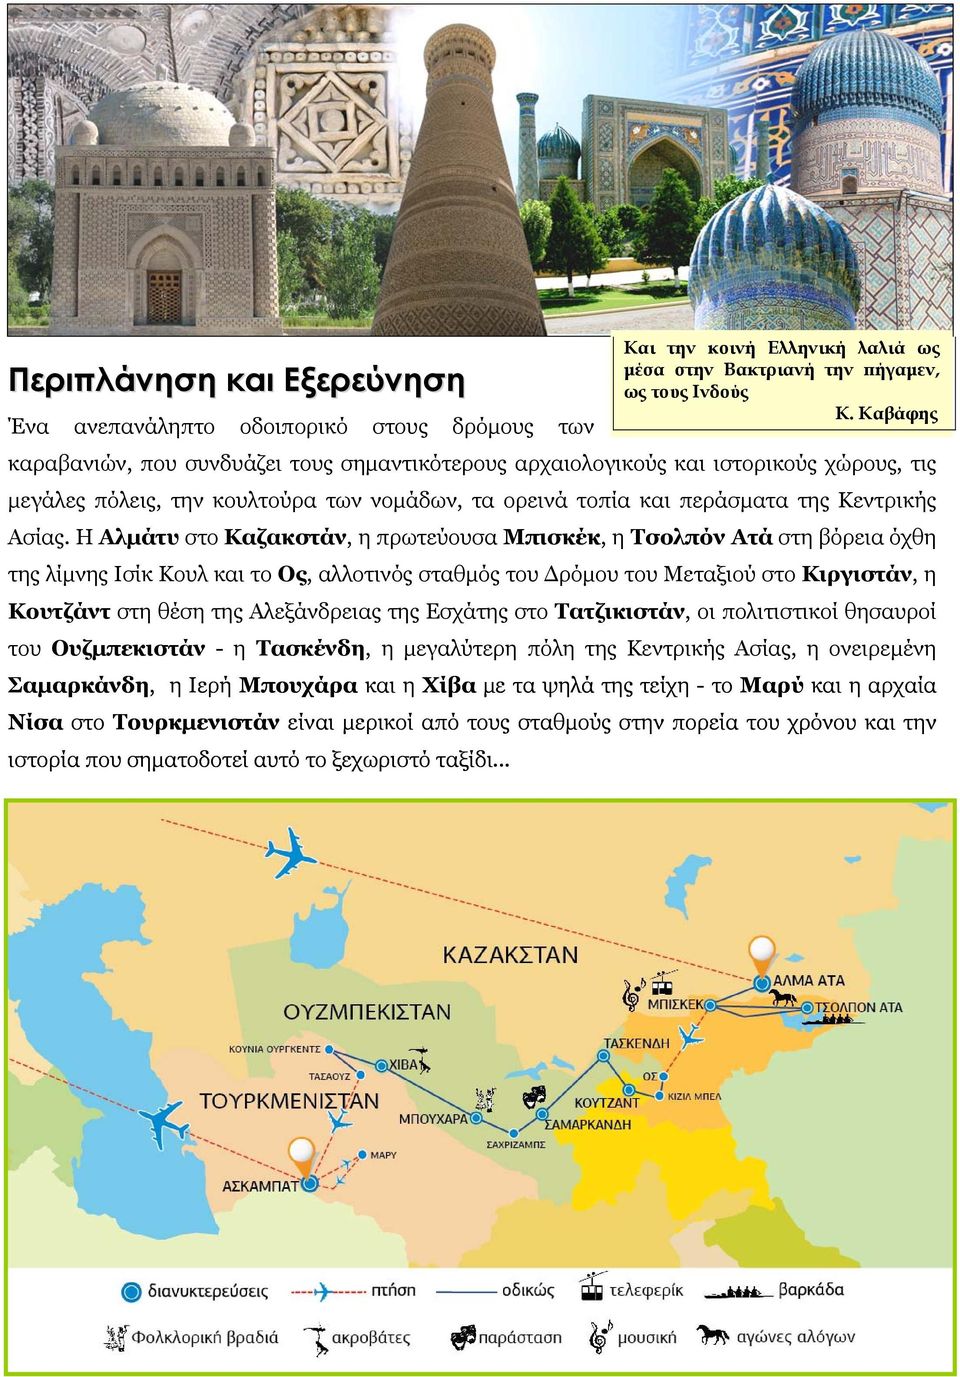 Η Αλμάτυ στο Καζακστάν, η πρωτεύουσα Μπισκέκ, η Τσολπόν Ατά στη βόρεια όχθη της λίμνης Ισίκ Κουλ και το Ος, αλλοτινός σταθμός του Δρόμου του Μεταξιού στο Κιργιστάν, η Κουτζάντ στη θέση της